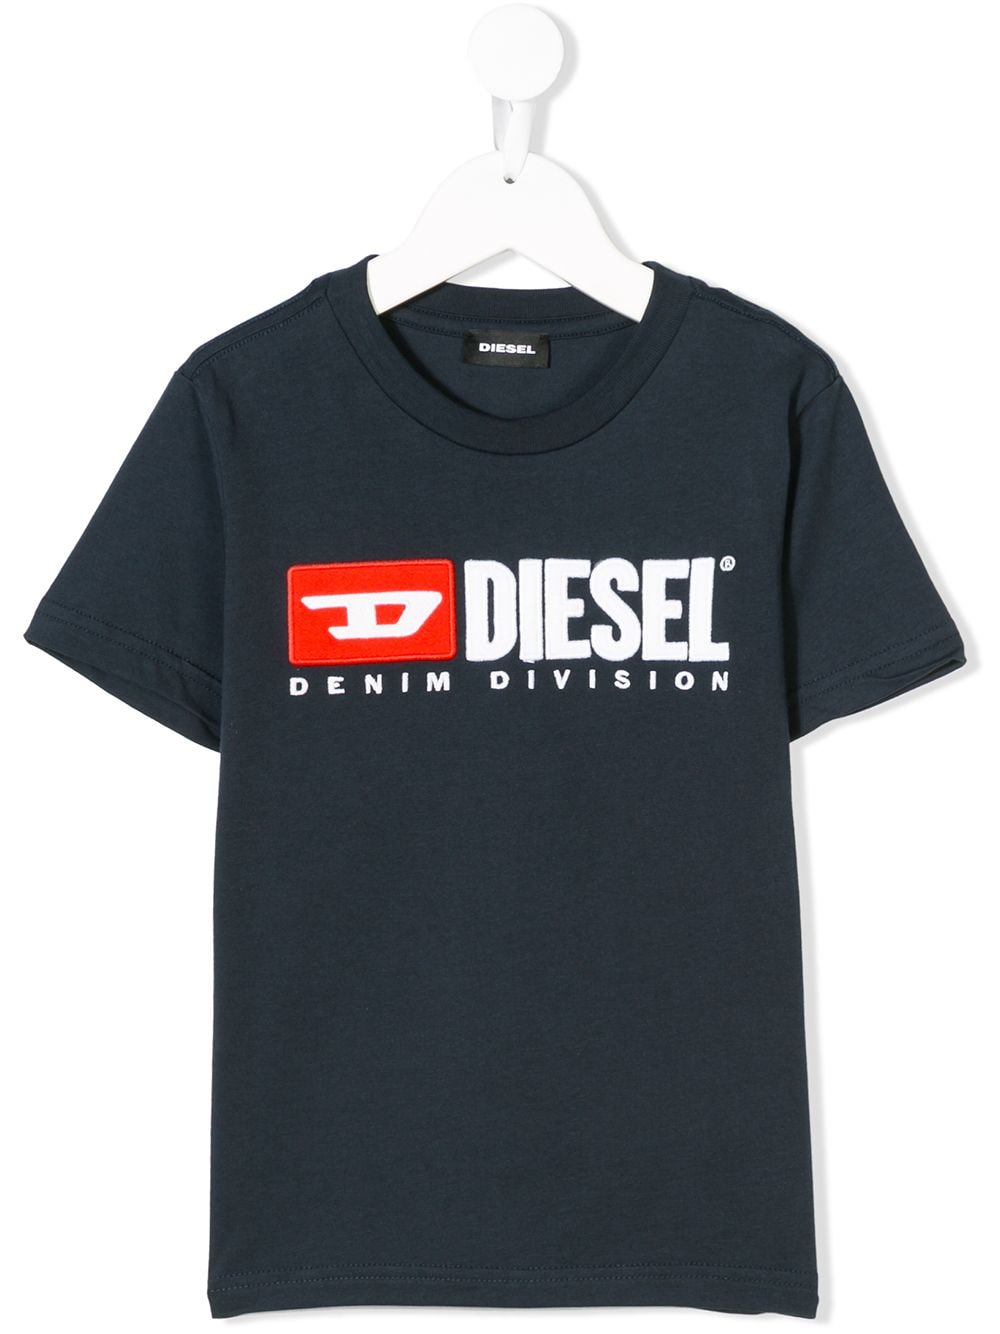 Diesel Kids Tjustdivision T-shirt - Blue von Diesel Kids